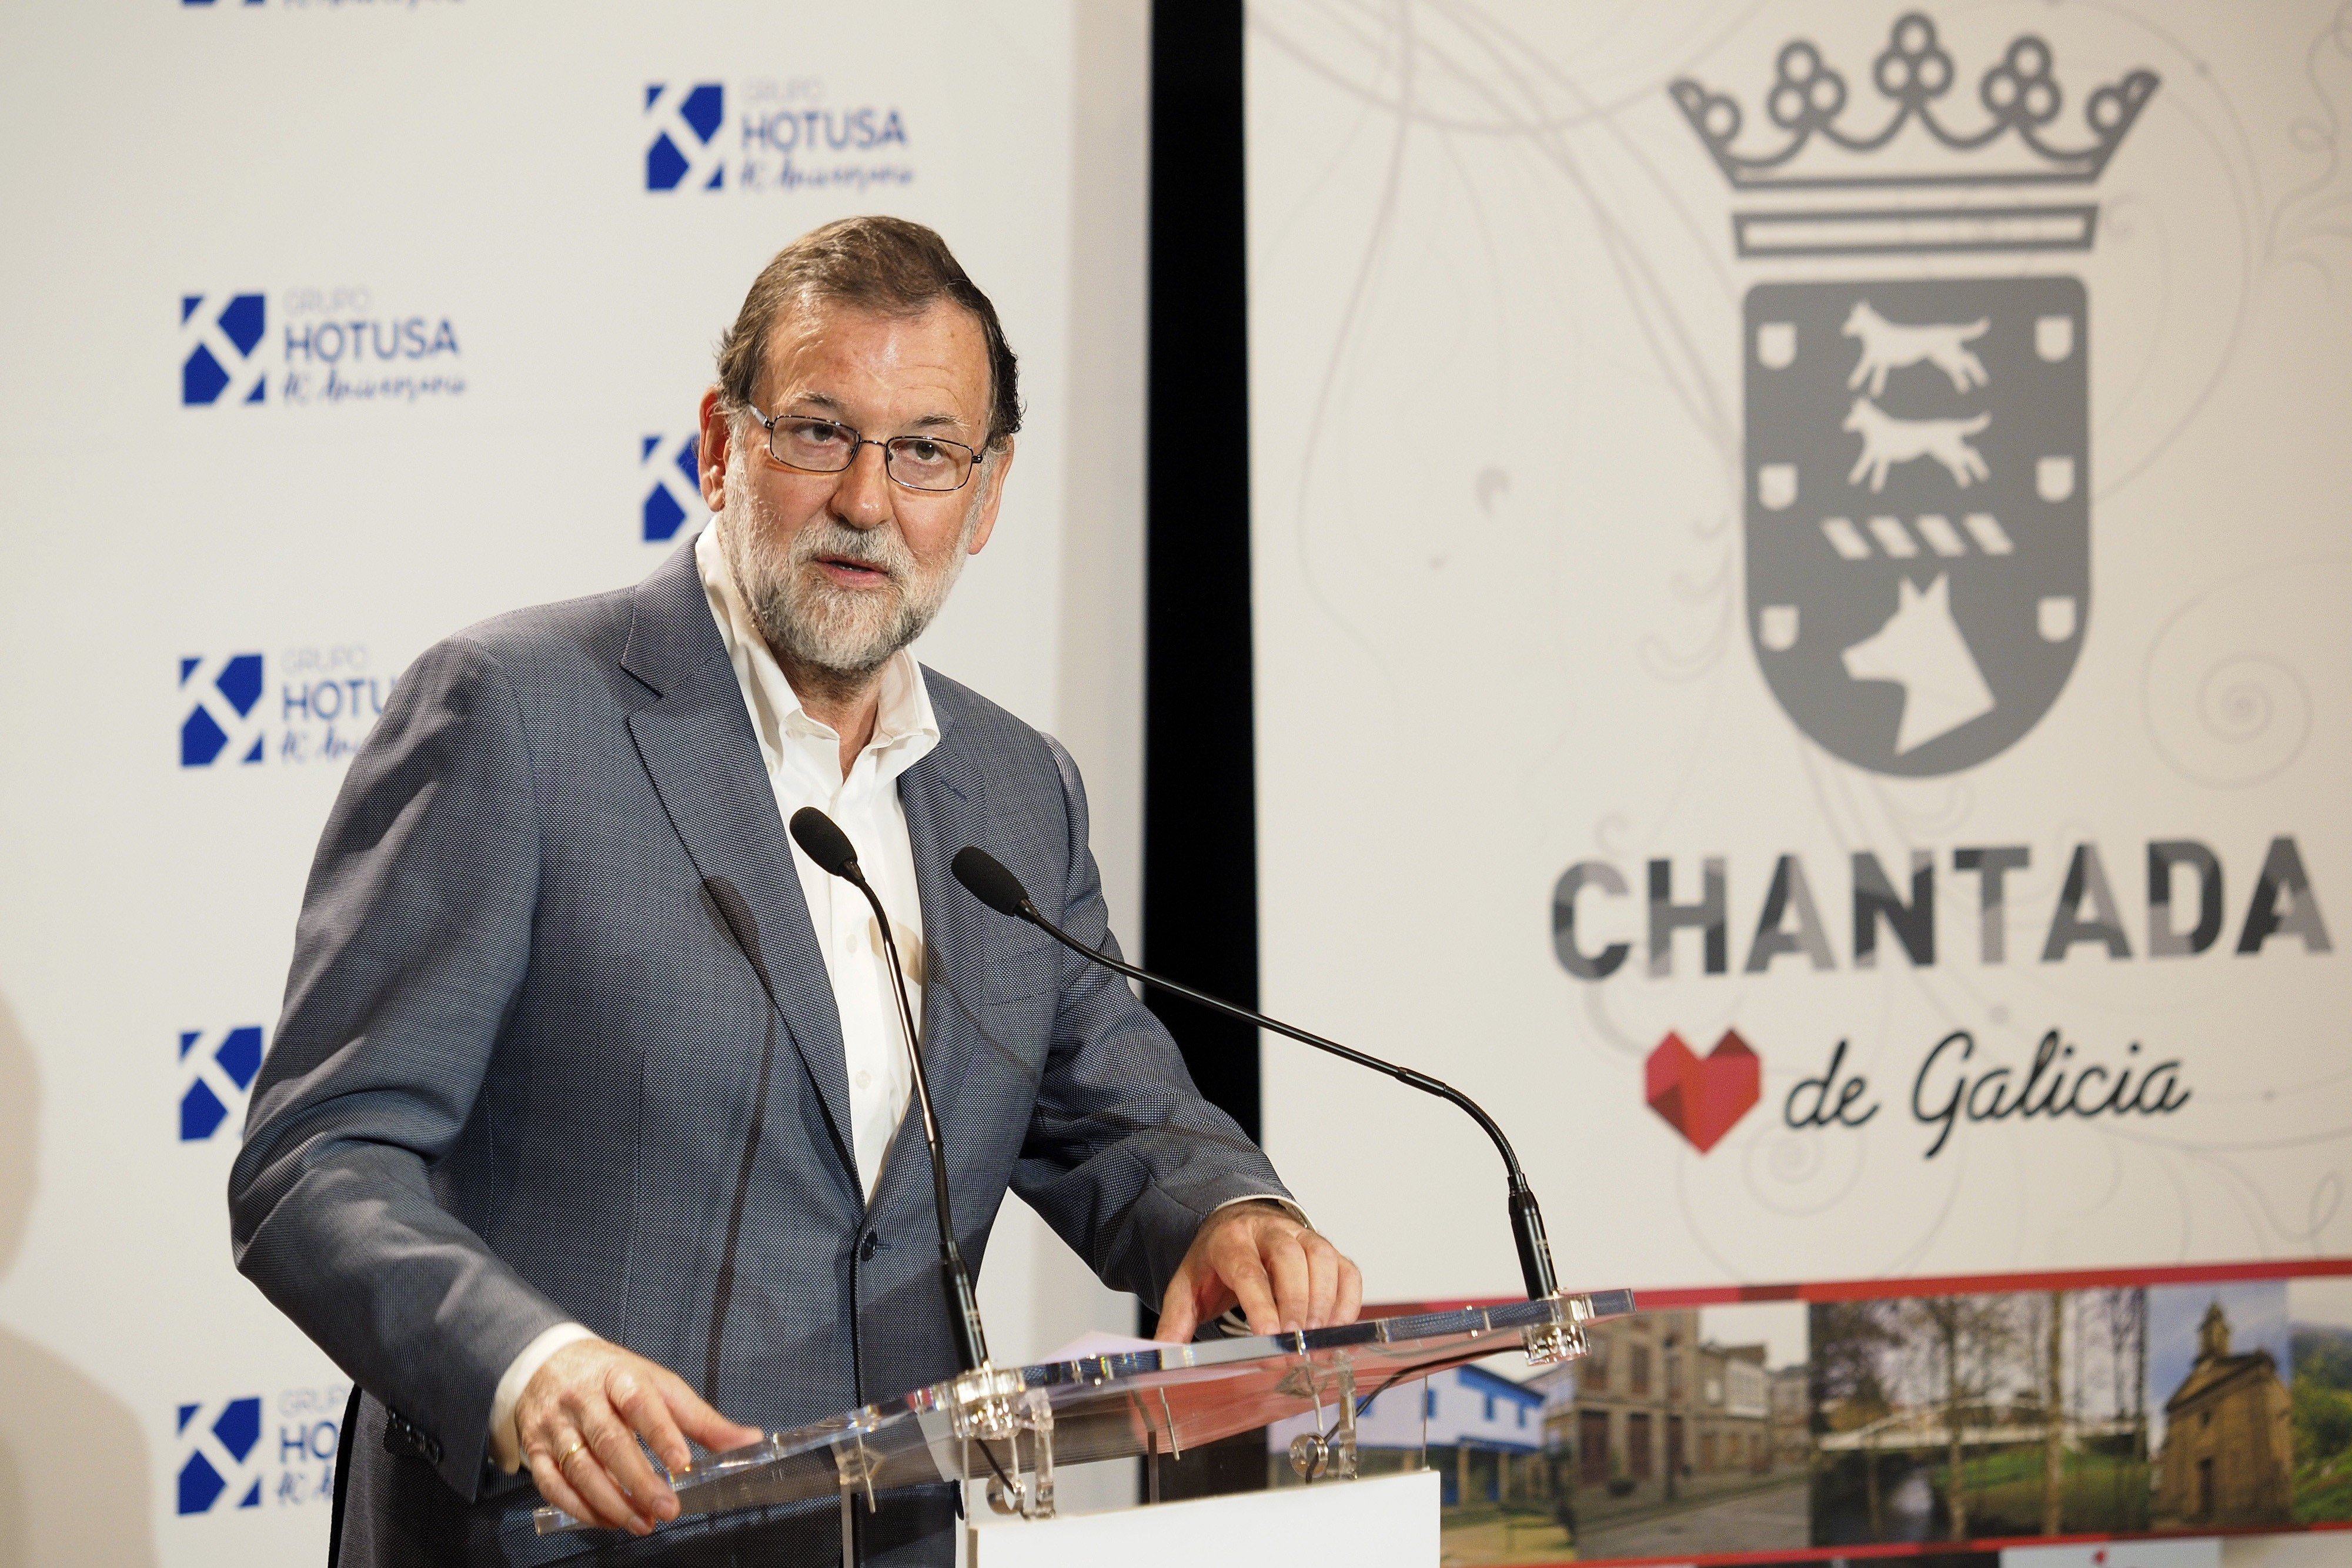 Rajoy fa una crida als catalans "sensats" per "aïllar els radicals"